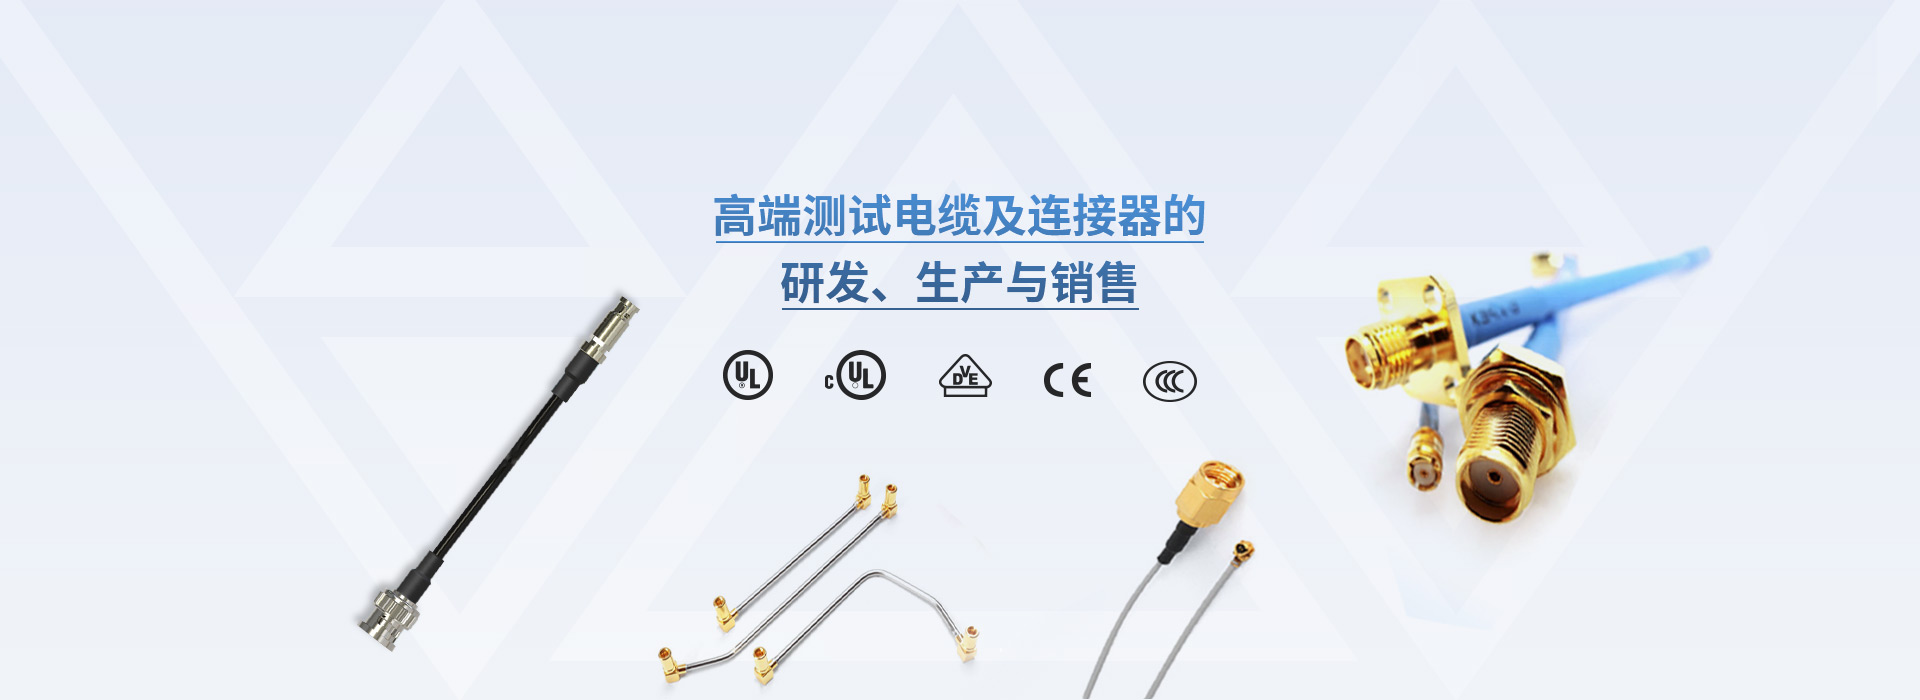 高端测试电缆及连接器的研发、生产与销售